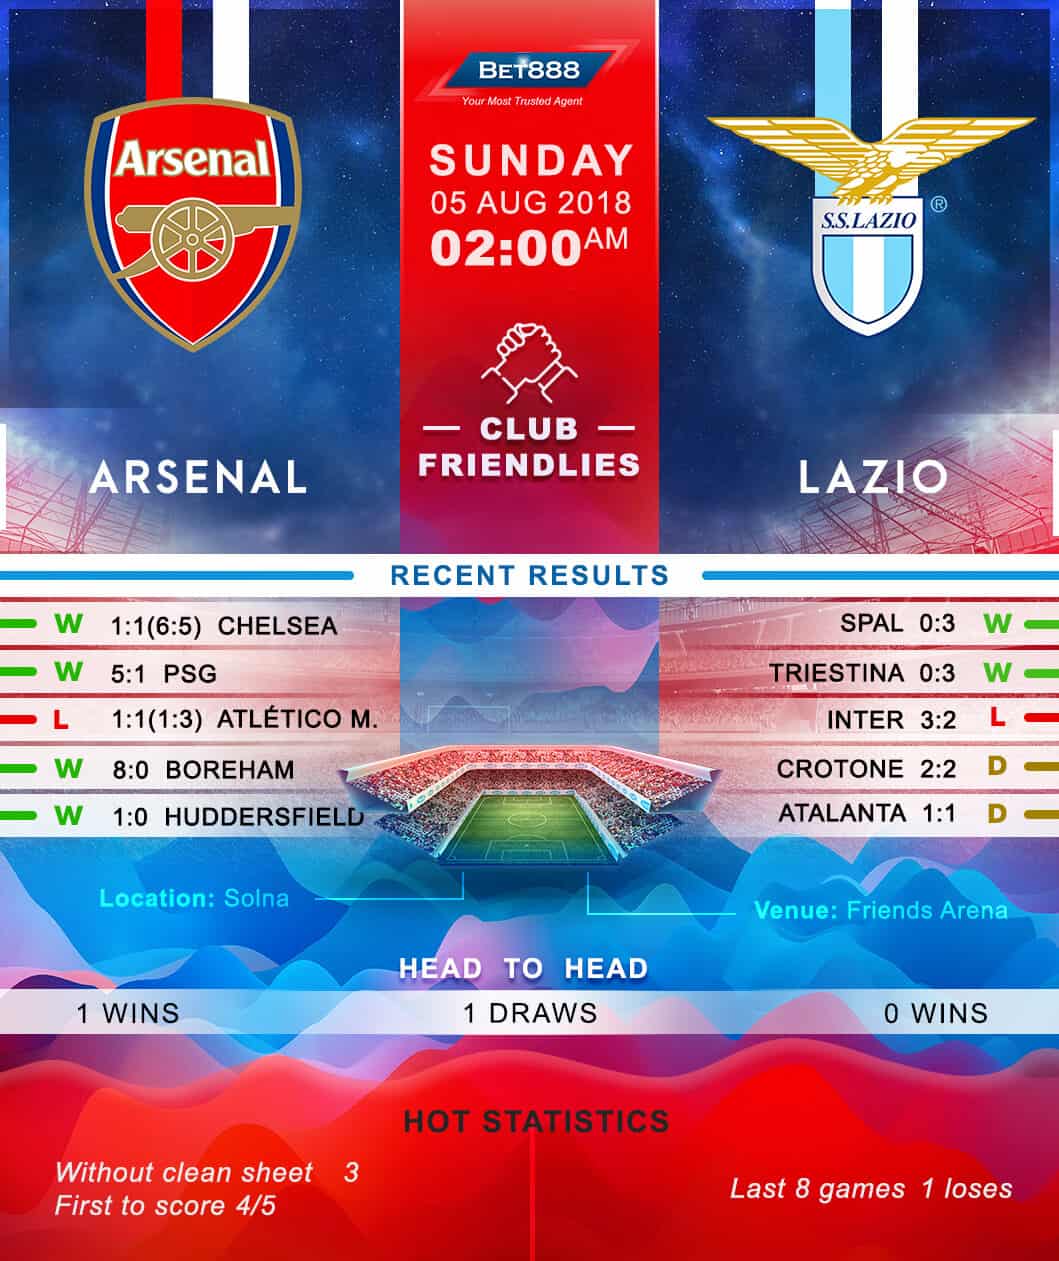 Arsenal vs Lazio 05/08/18